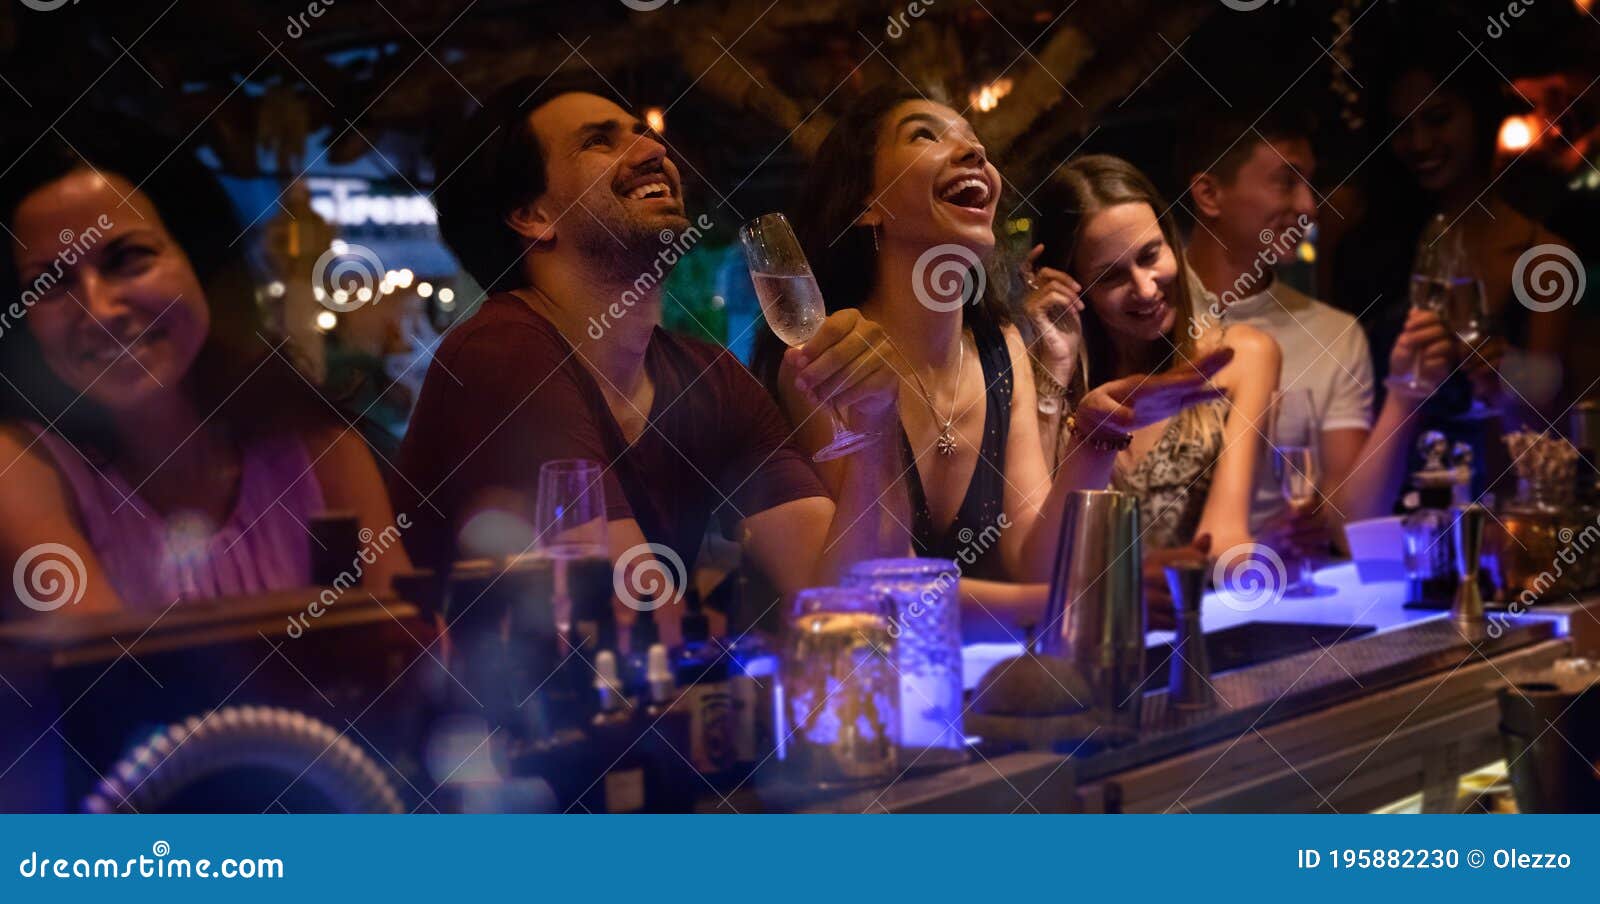 Grupo De Jóvenes Divirtiéndose En Una Fiesta En El Bar Riendo Y Bebiendo  Alcohol Foto de archivo - Imagen de hospitalidad, noche: 195882230